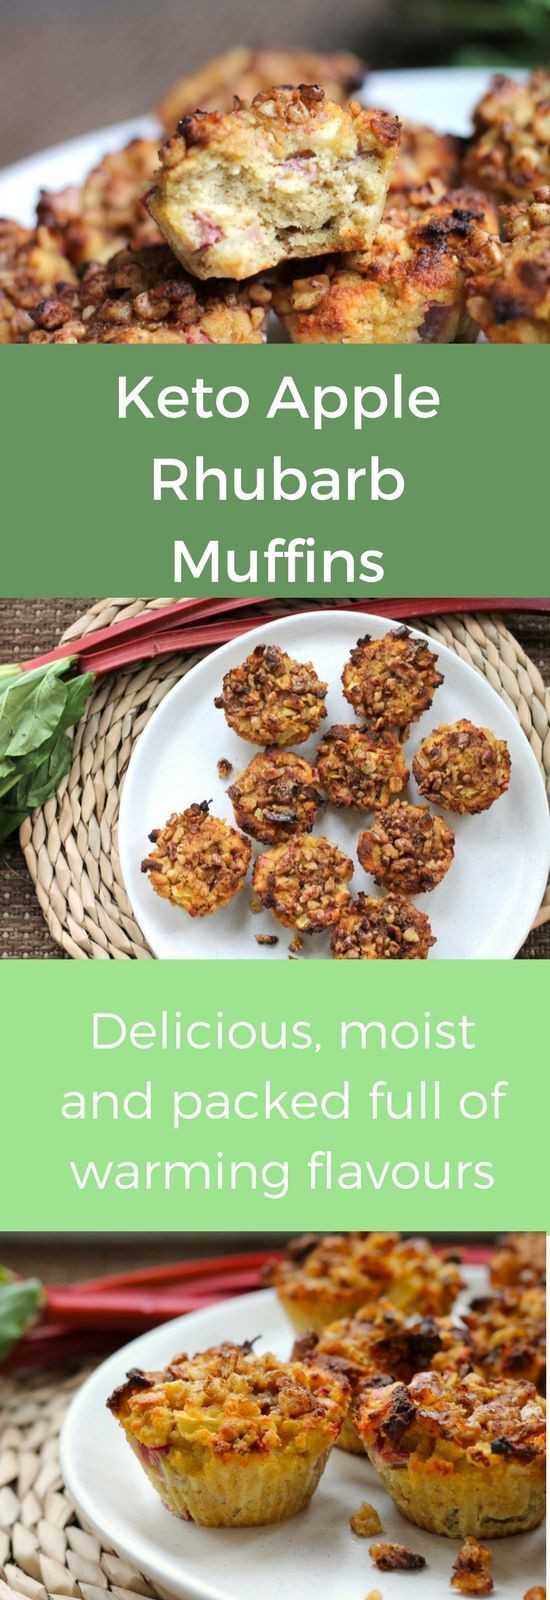 Low Carb Keto Rhubarb Recipes
 Keto Apple Rhubarb Muffins Recipe